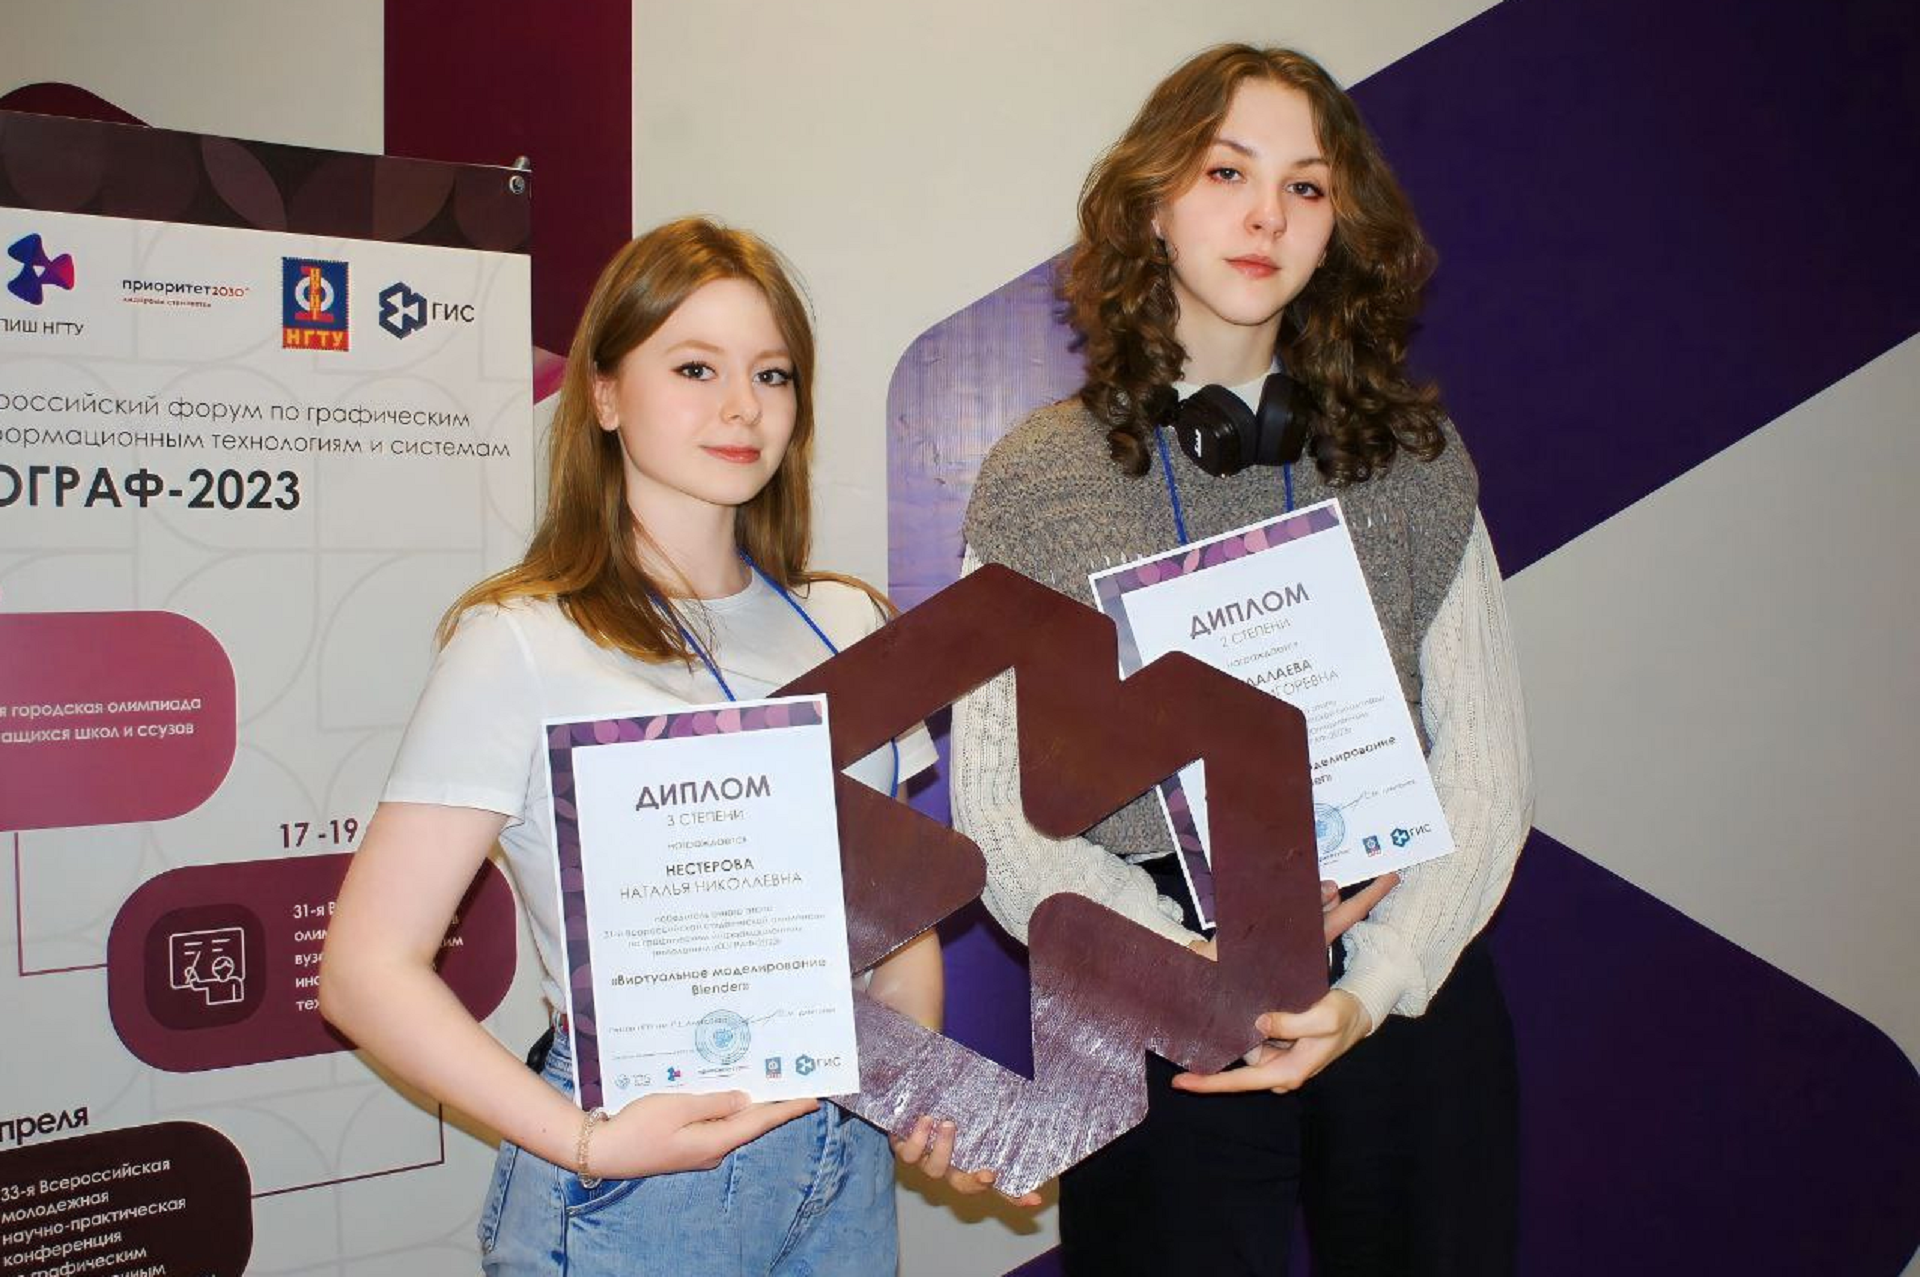 Студенты ВятГУ - призеры всероссийской олимпиады по графическим информационным технологиям